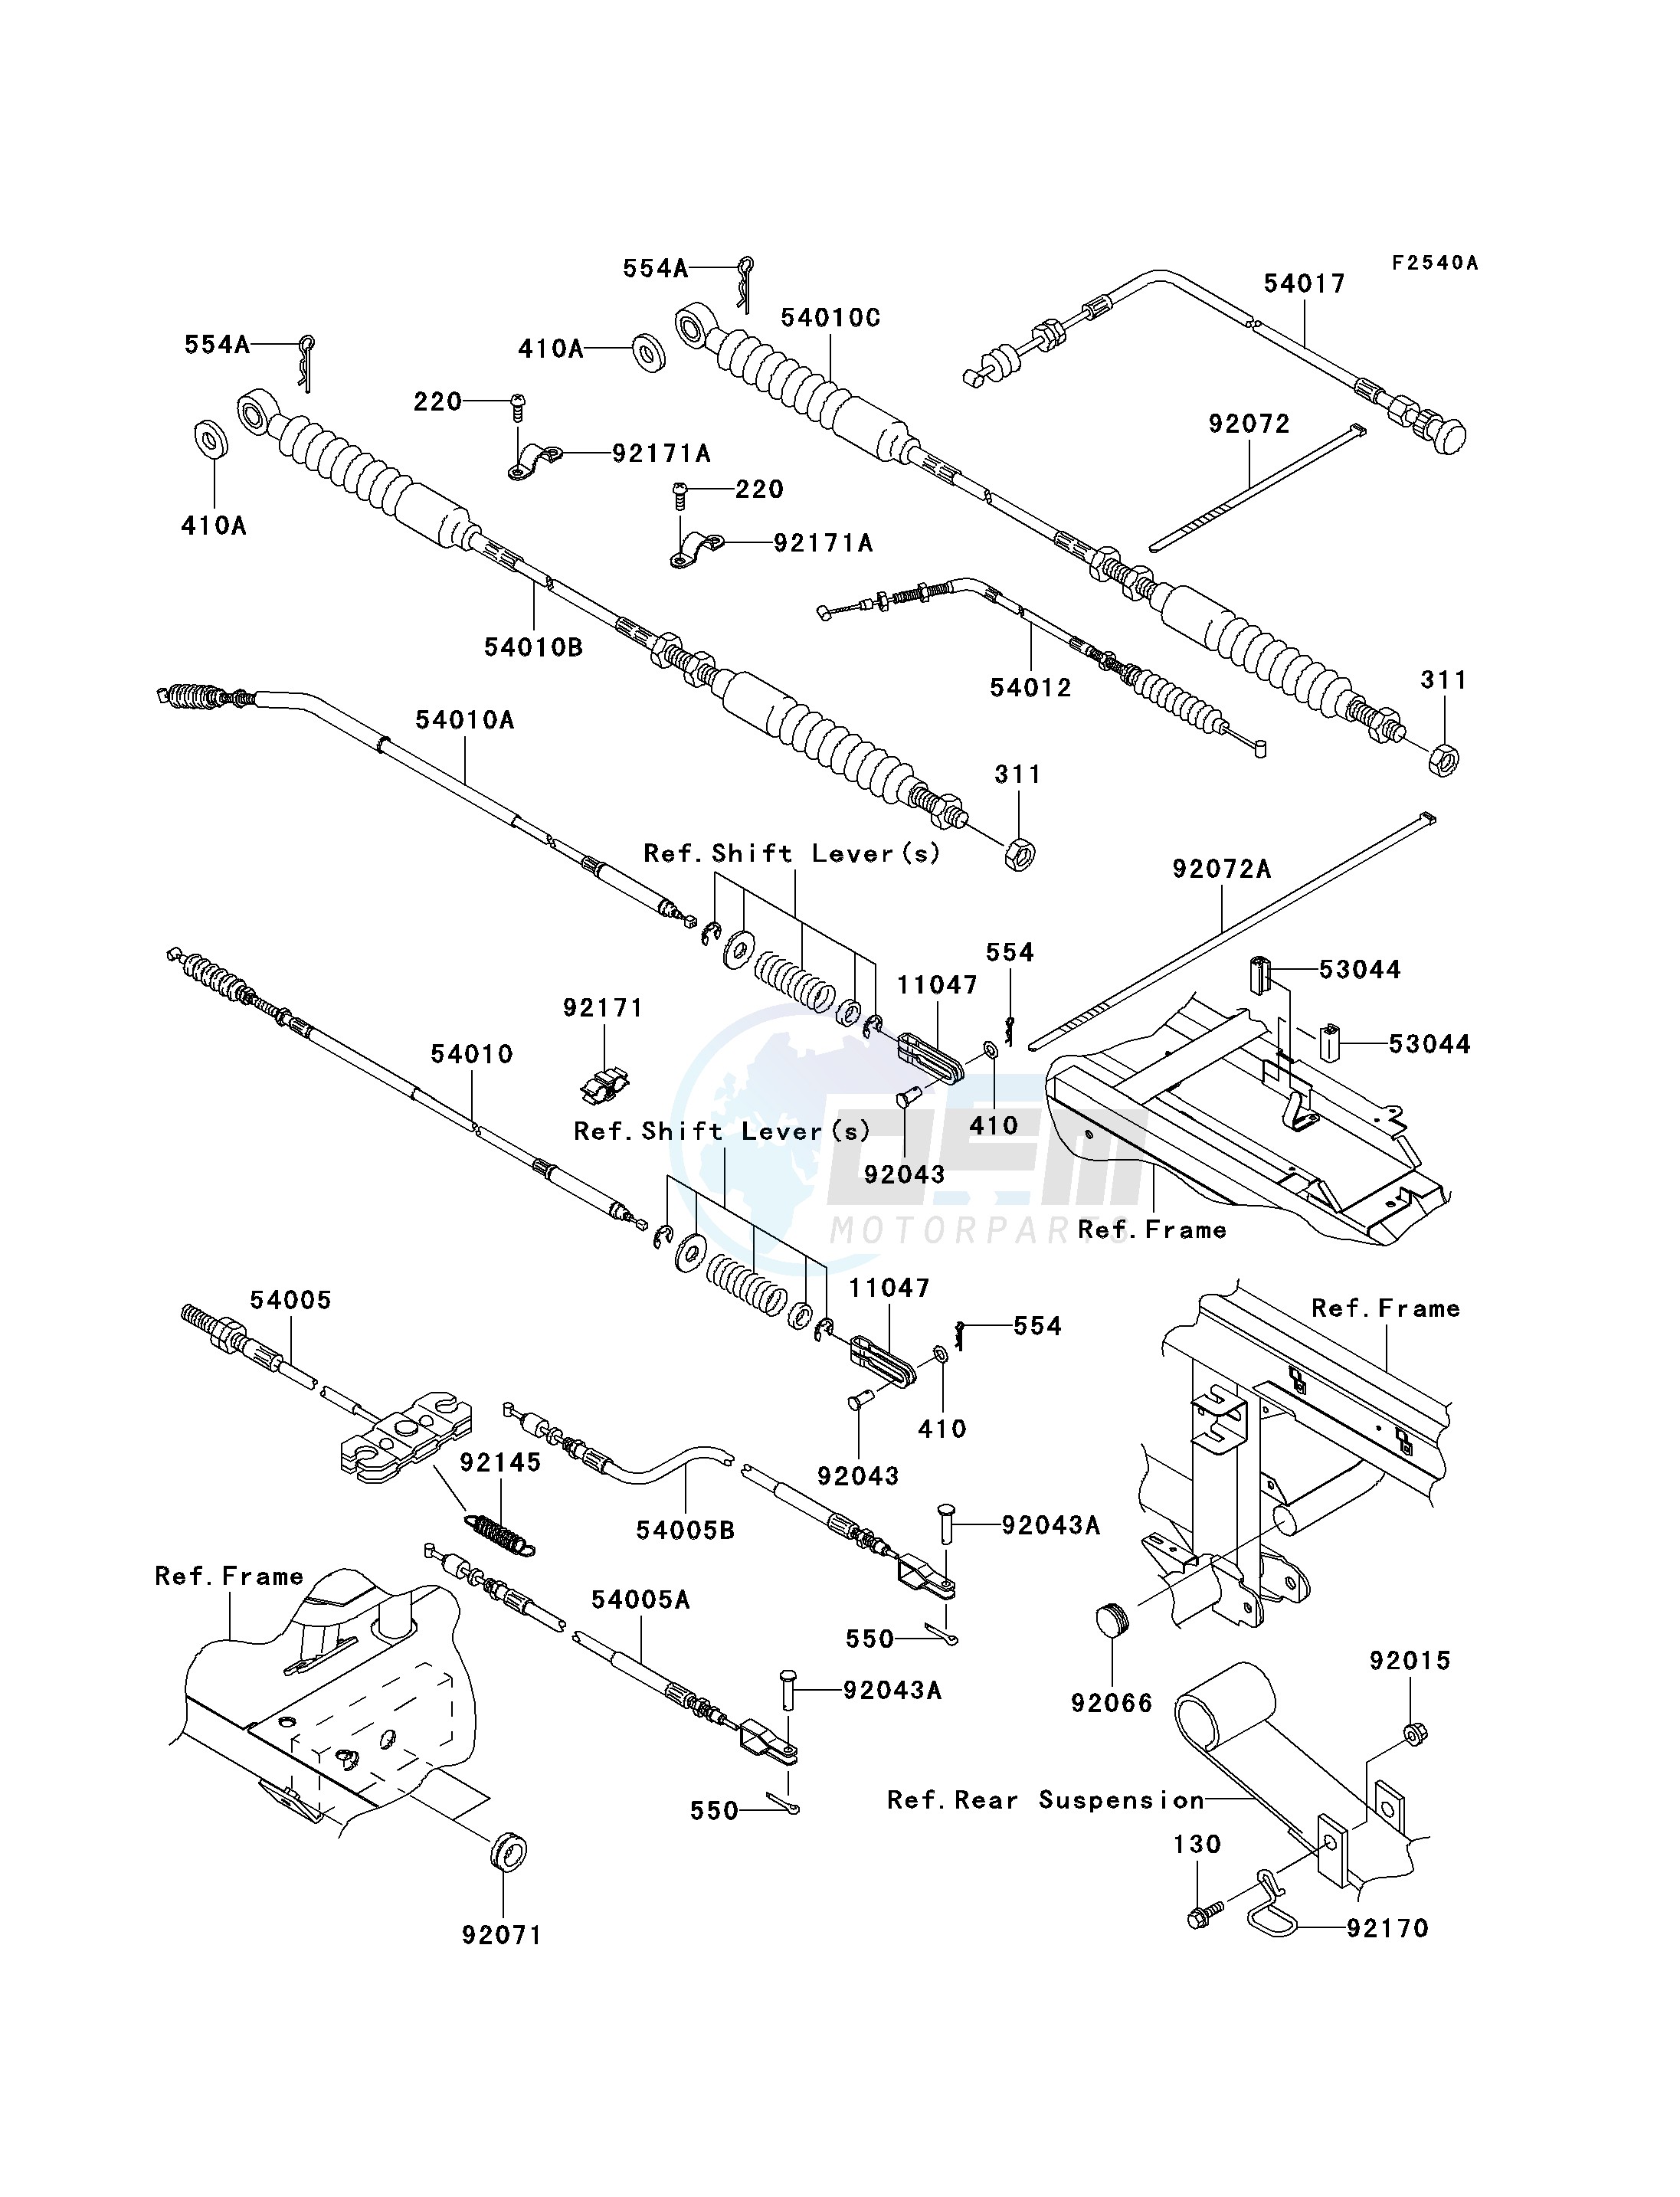 CABLES-- JK1AFCJ1 6B506427 - - - blueprint